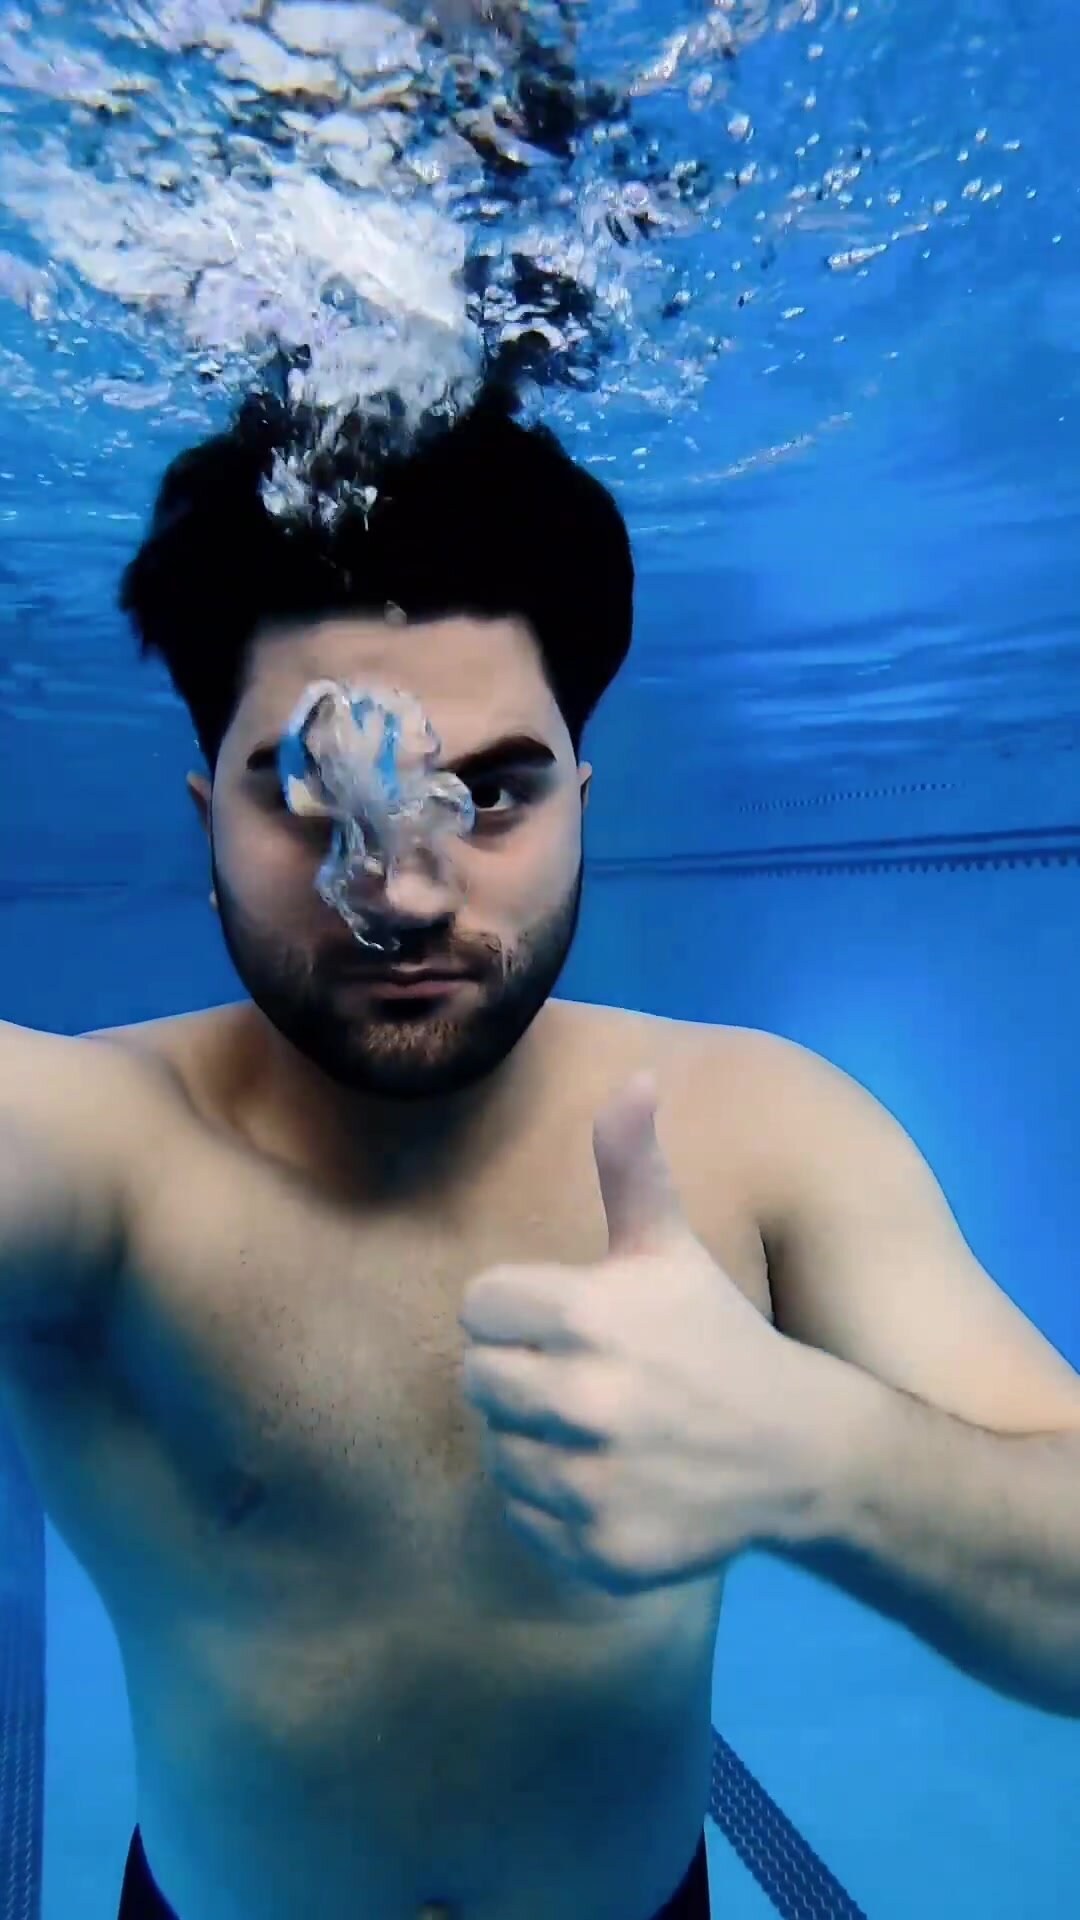 Barefaced arab loosing air underwater in pool